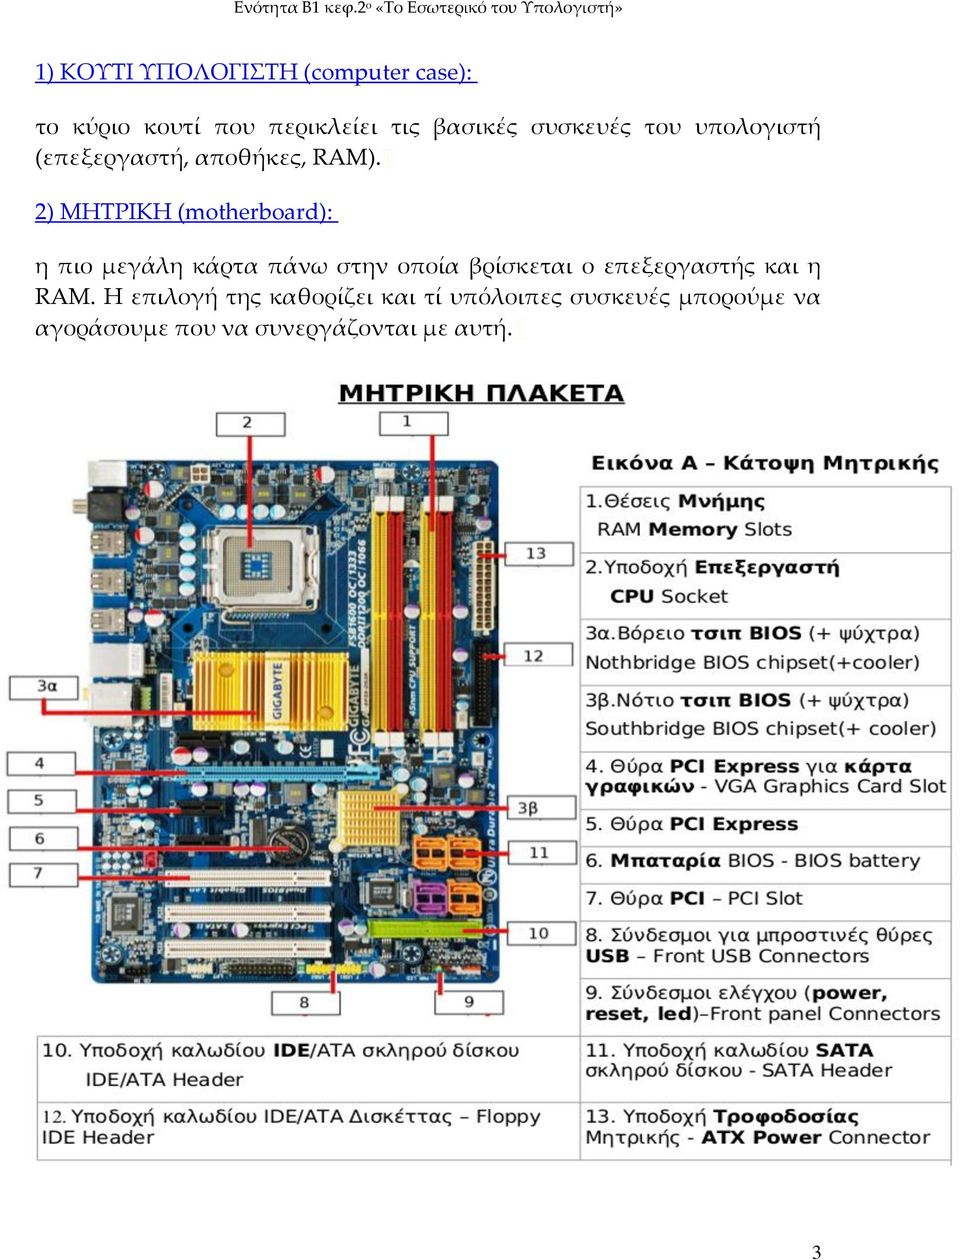 2) ΜΗΣΡΙΚΗ (motherboard): η πιο μεγάλη κάρτα πάνω στην οποία βρίσκεται ο